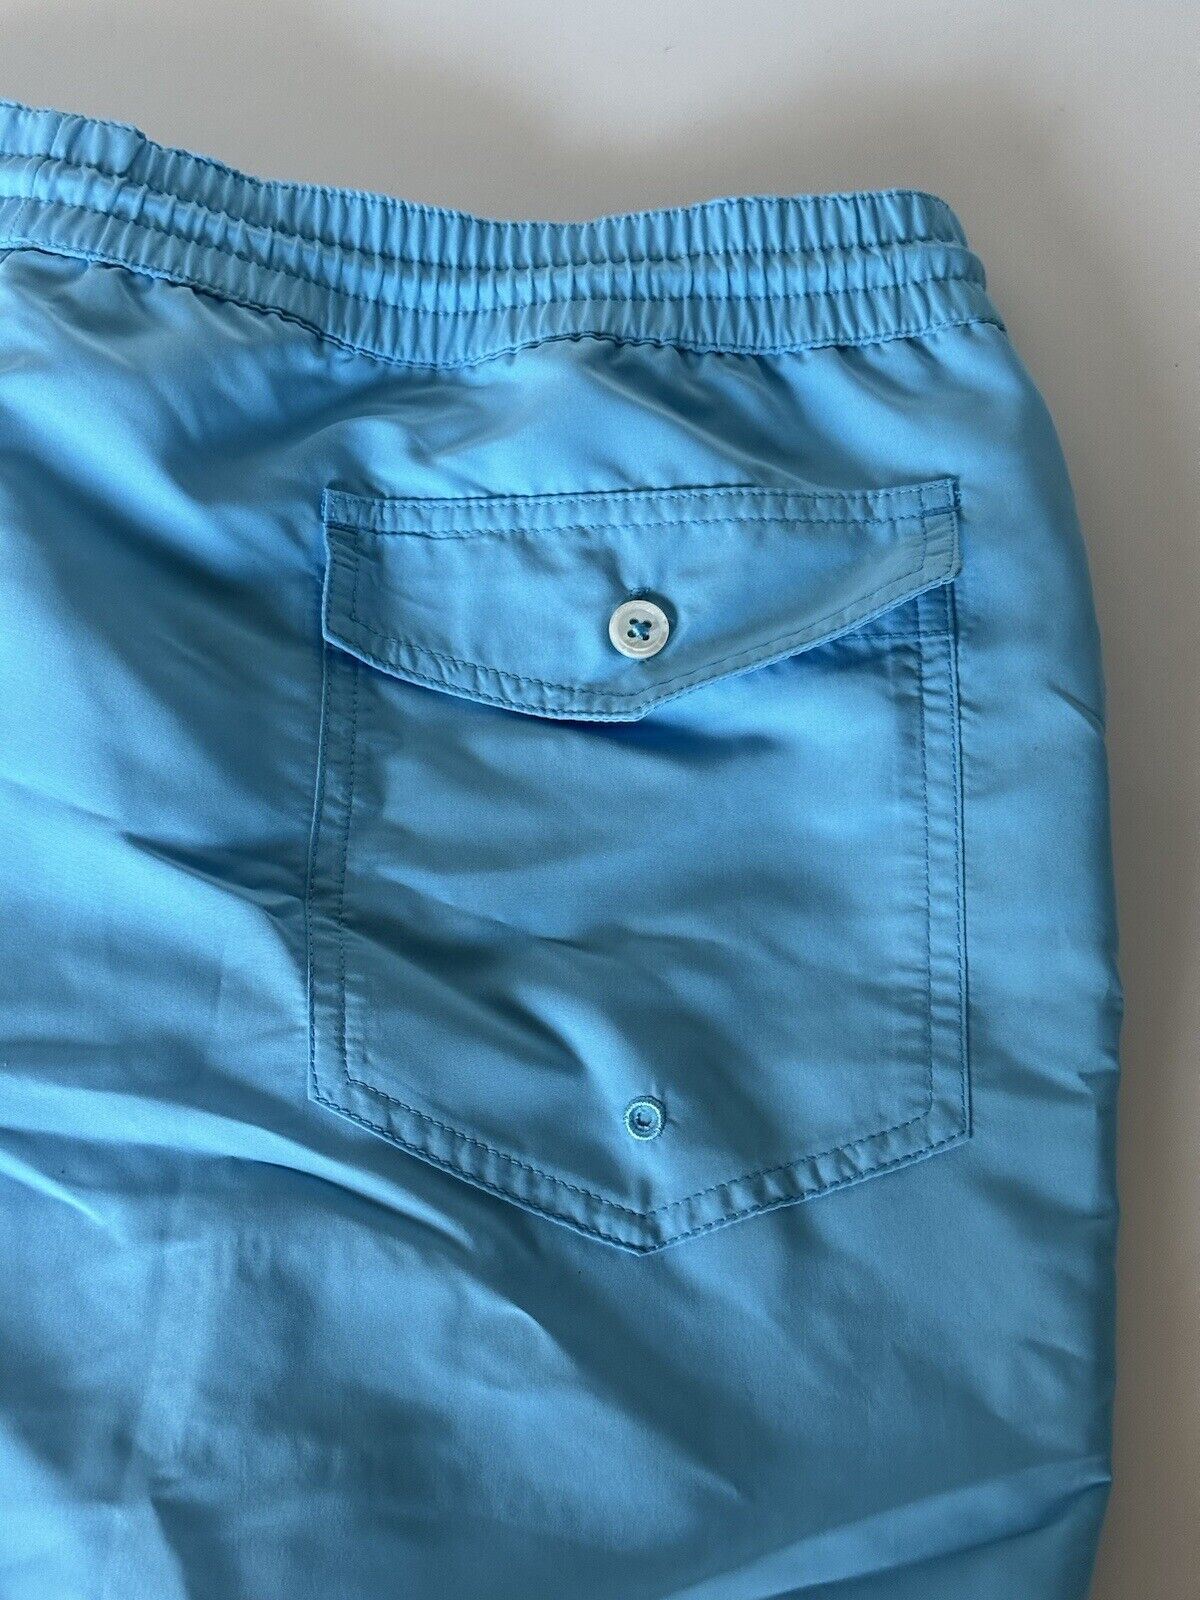 Мужские синие шорты для плавания Polo Ralph Lauren Purple Label, размер NWT, 295 долларов, Португалия 